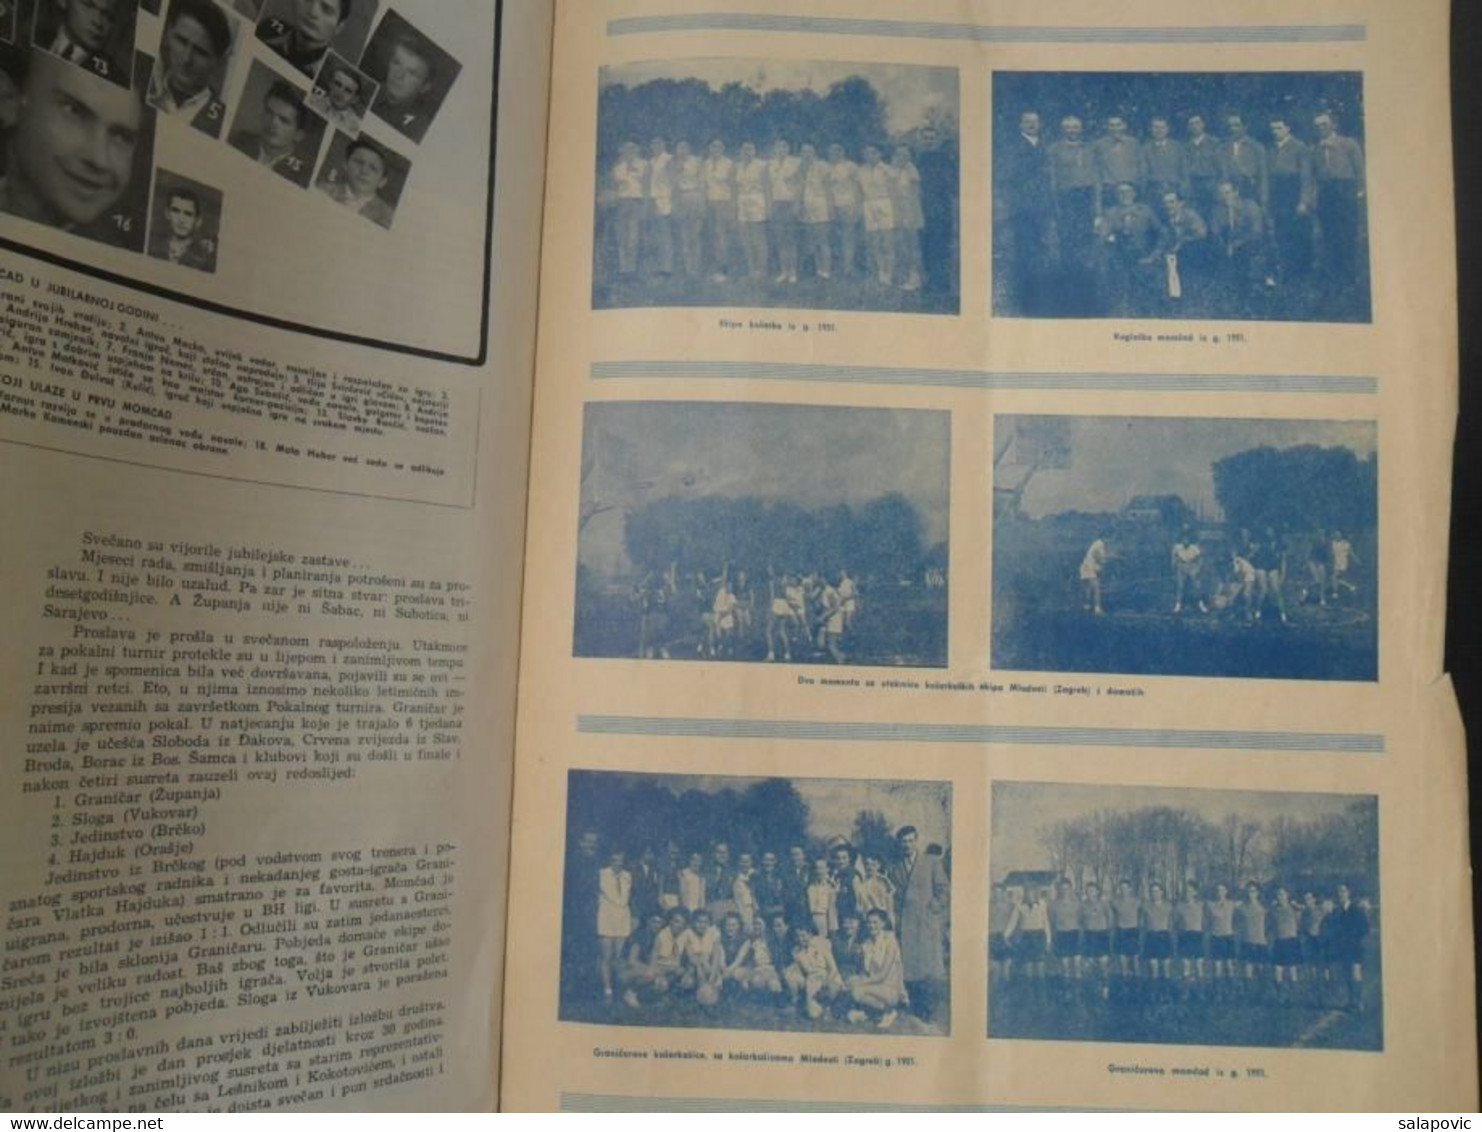 30 GODINA SPORTSKOG DRUSTVA GRANICAR ZUPANJA Monografija Football Club Croatia, Monograph - Libri